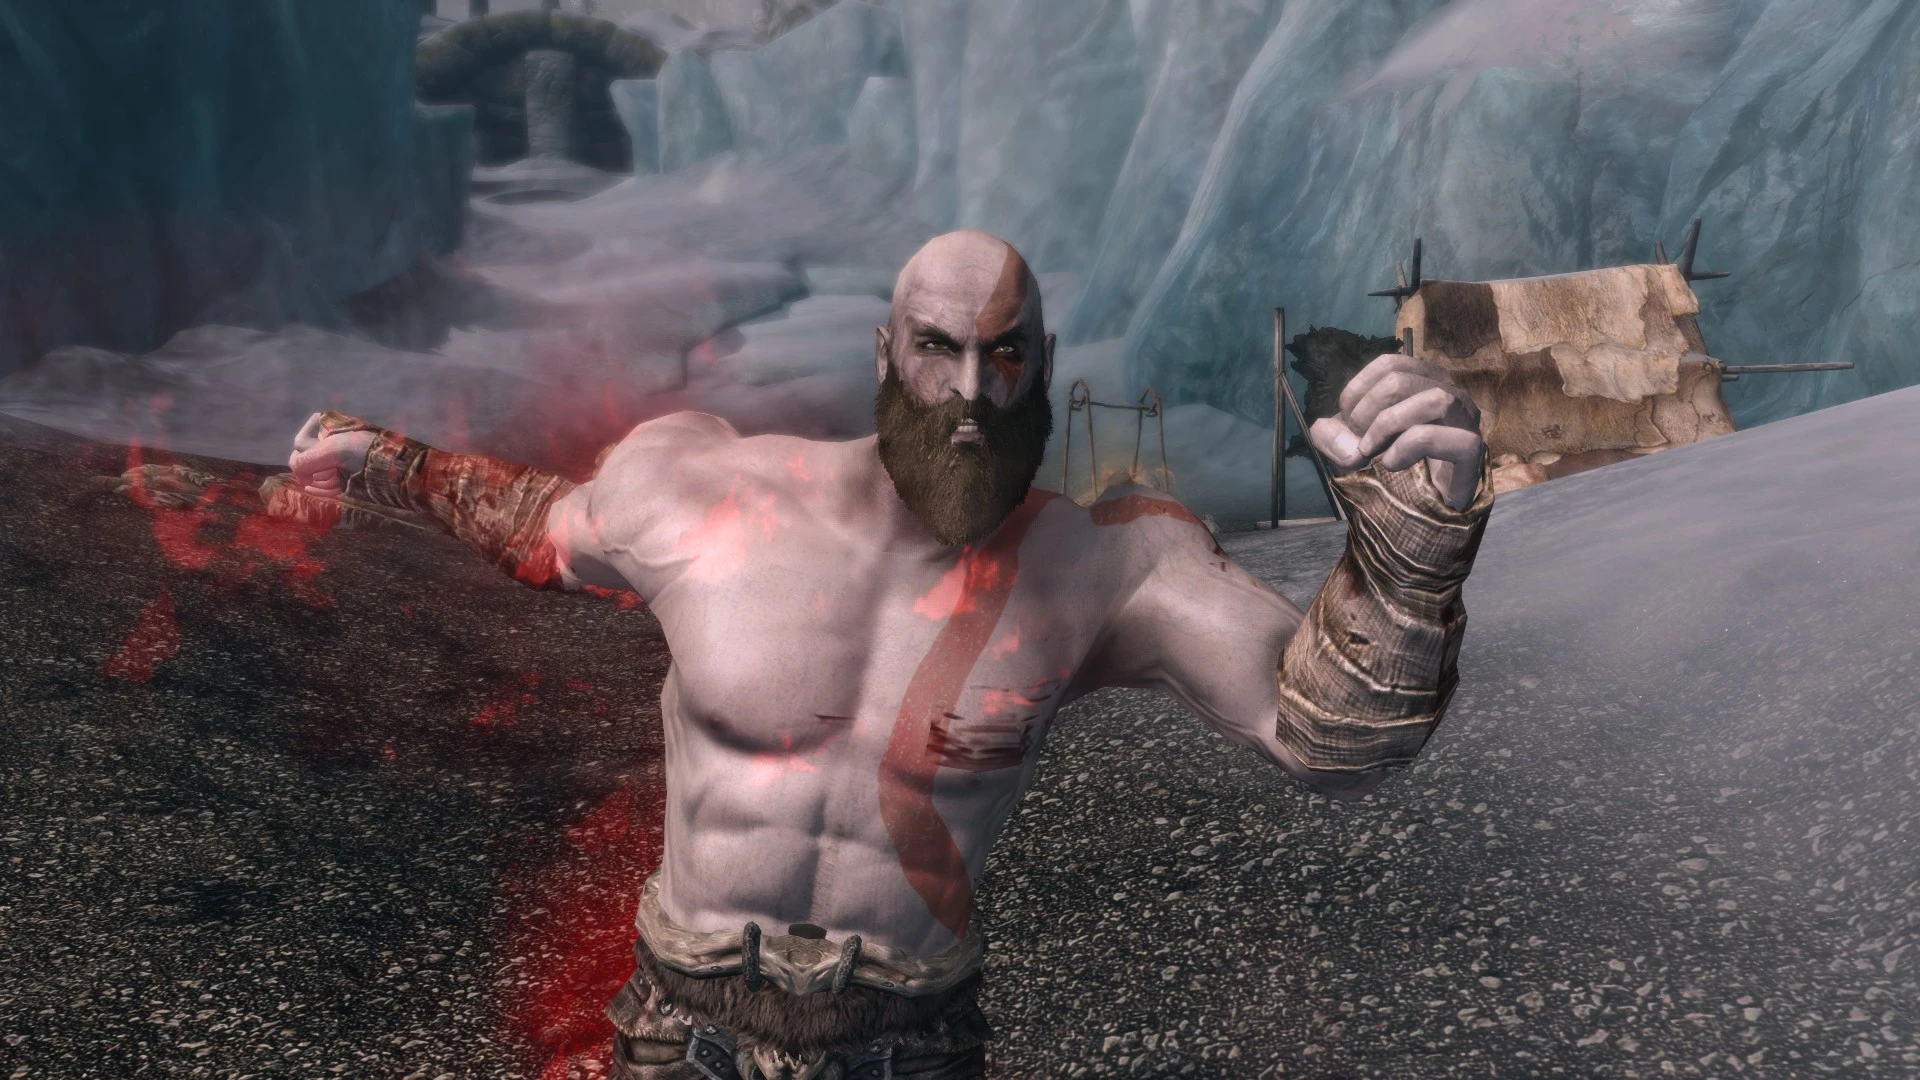 Kratos – Xenoverse Mods